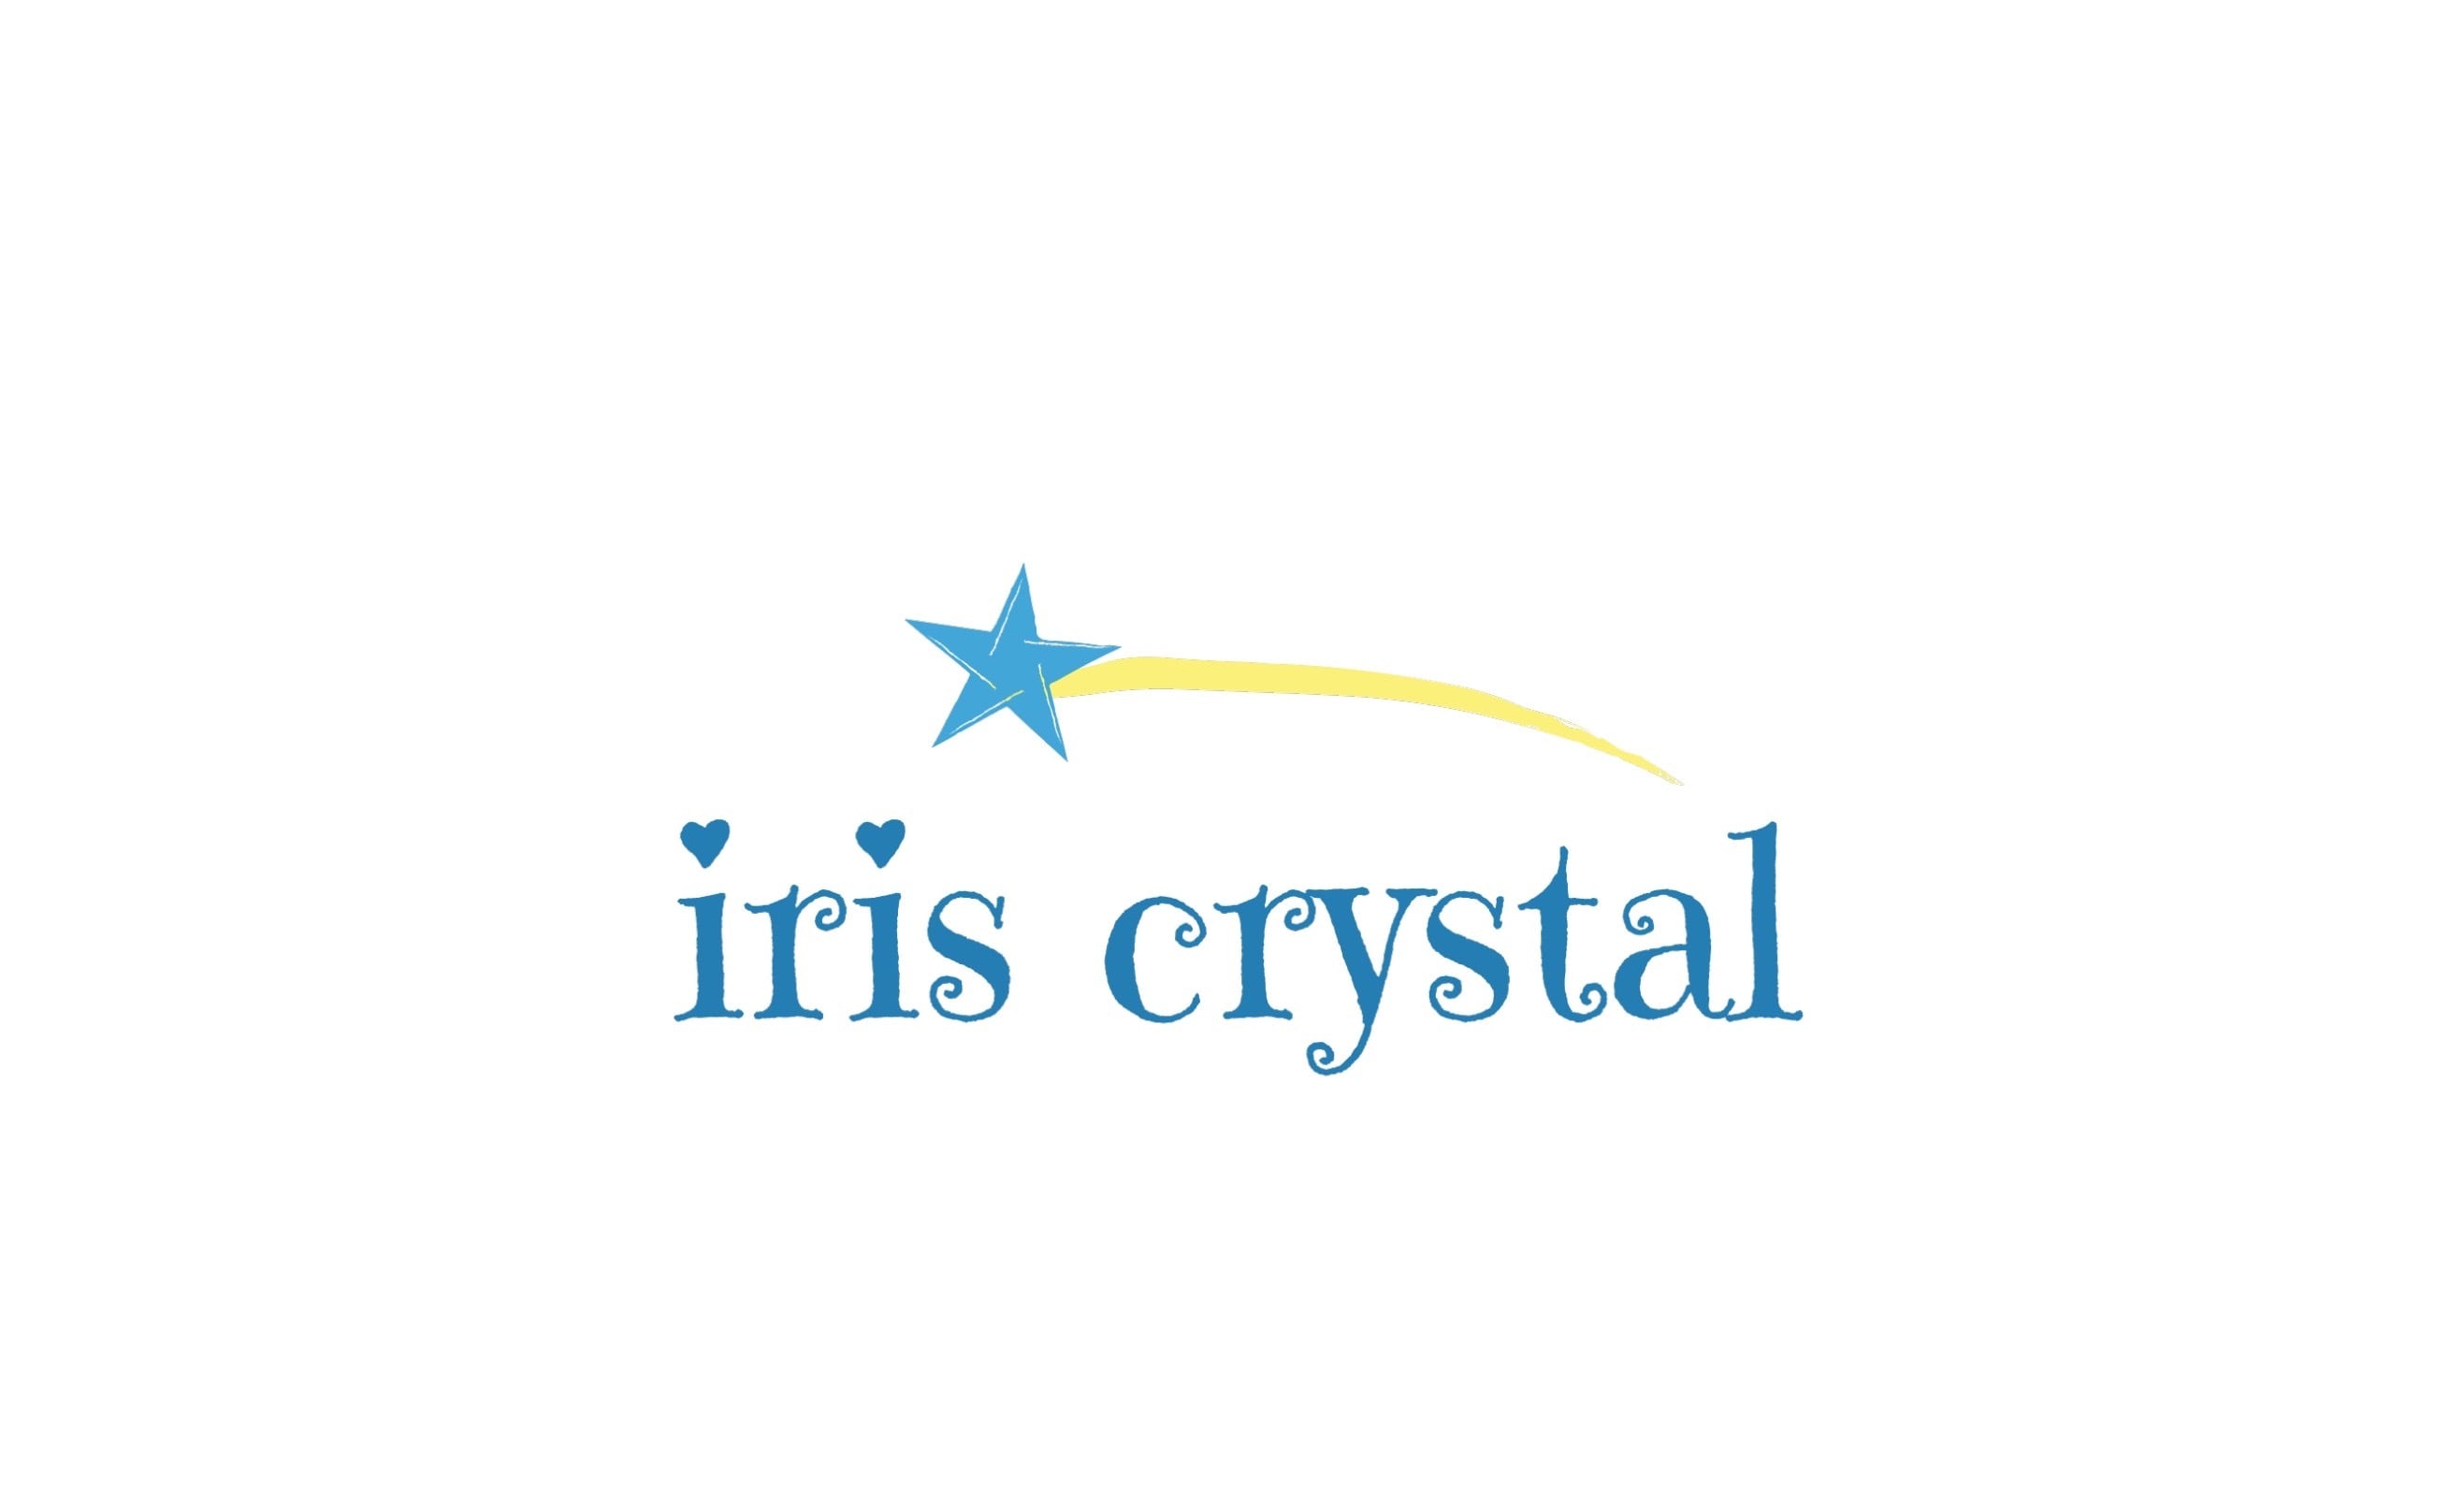 iris crystal（アイリスクリスタル）